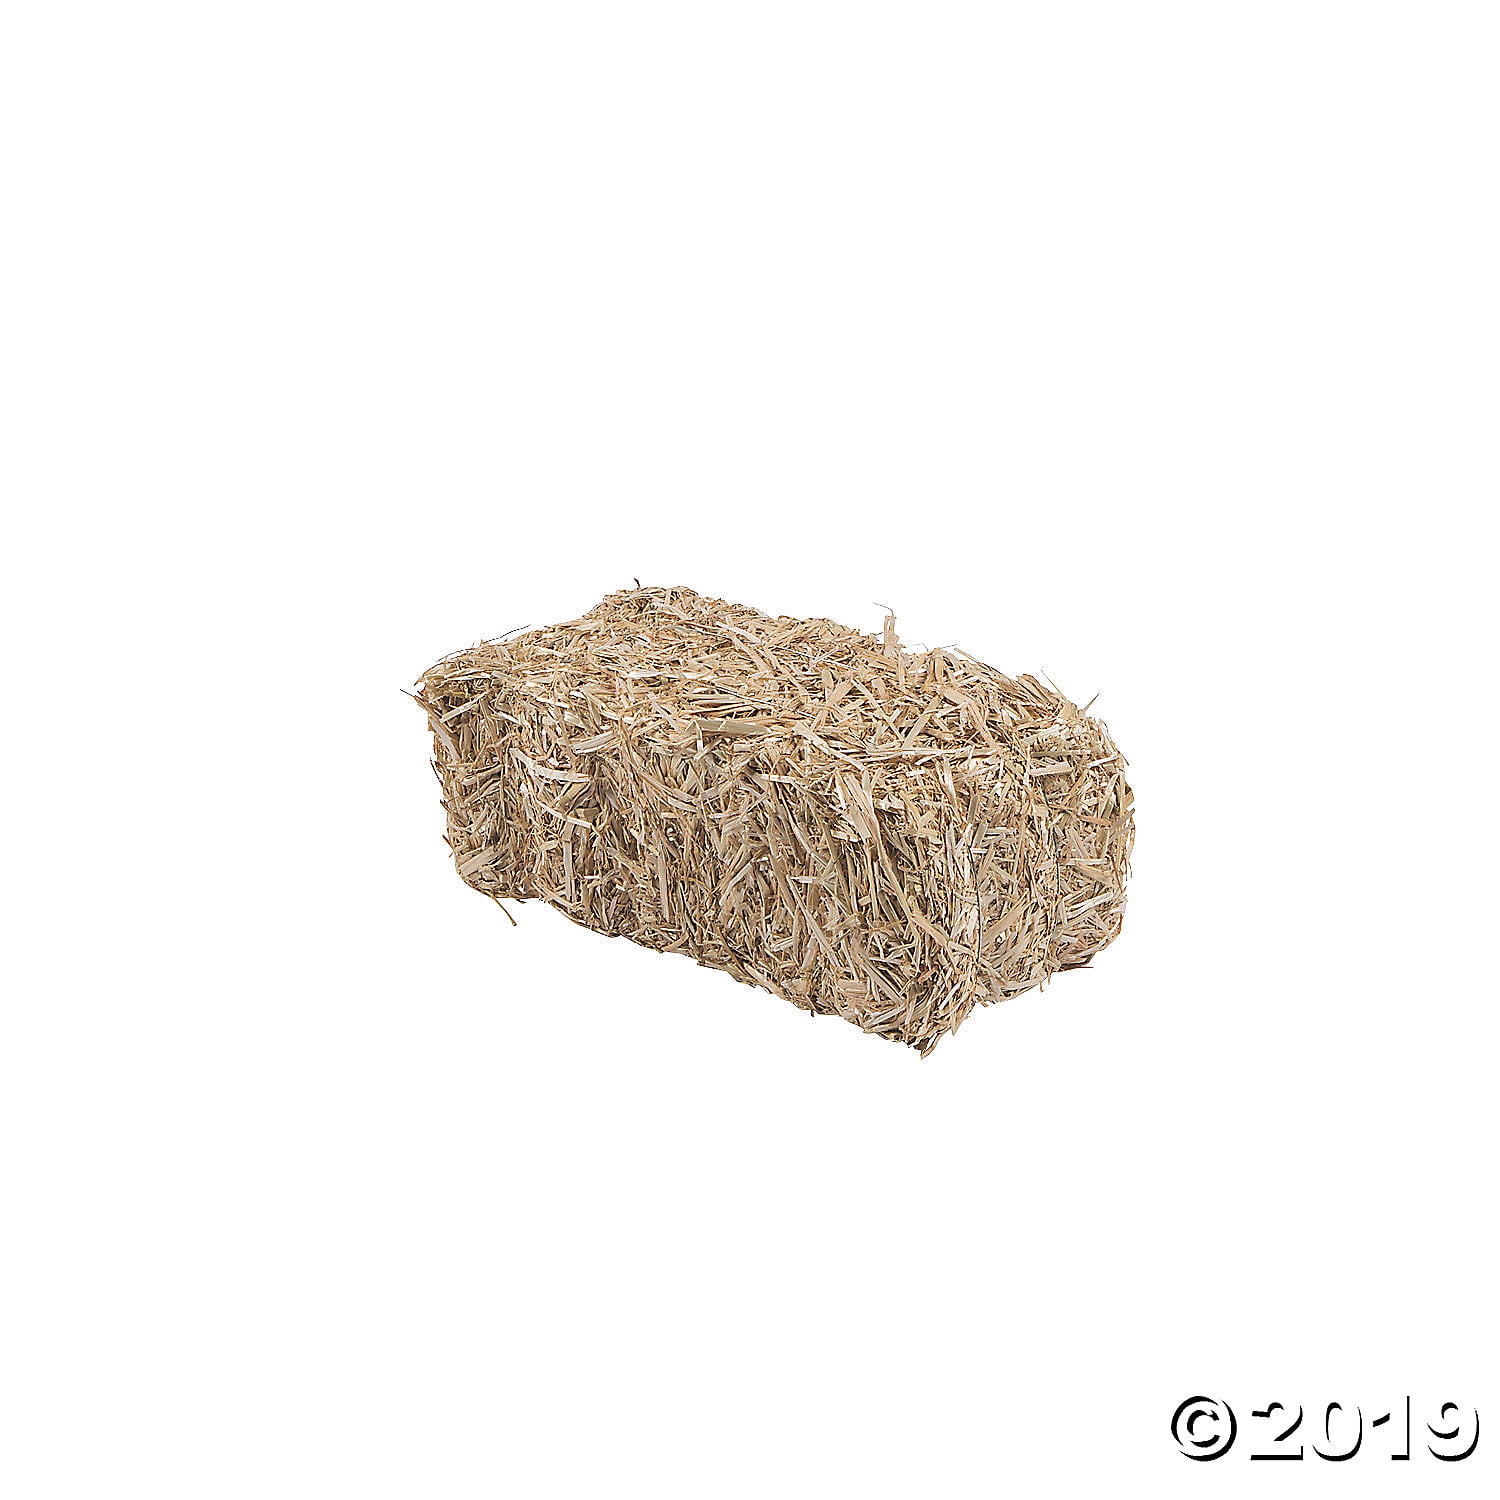 Floracraft Decorative Straw Hay Bale - 24 24x12x12